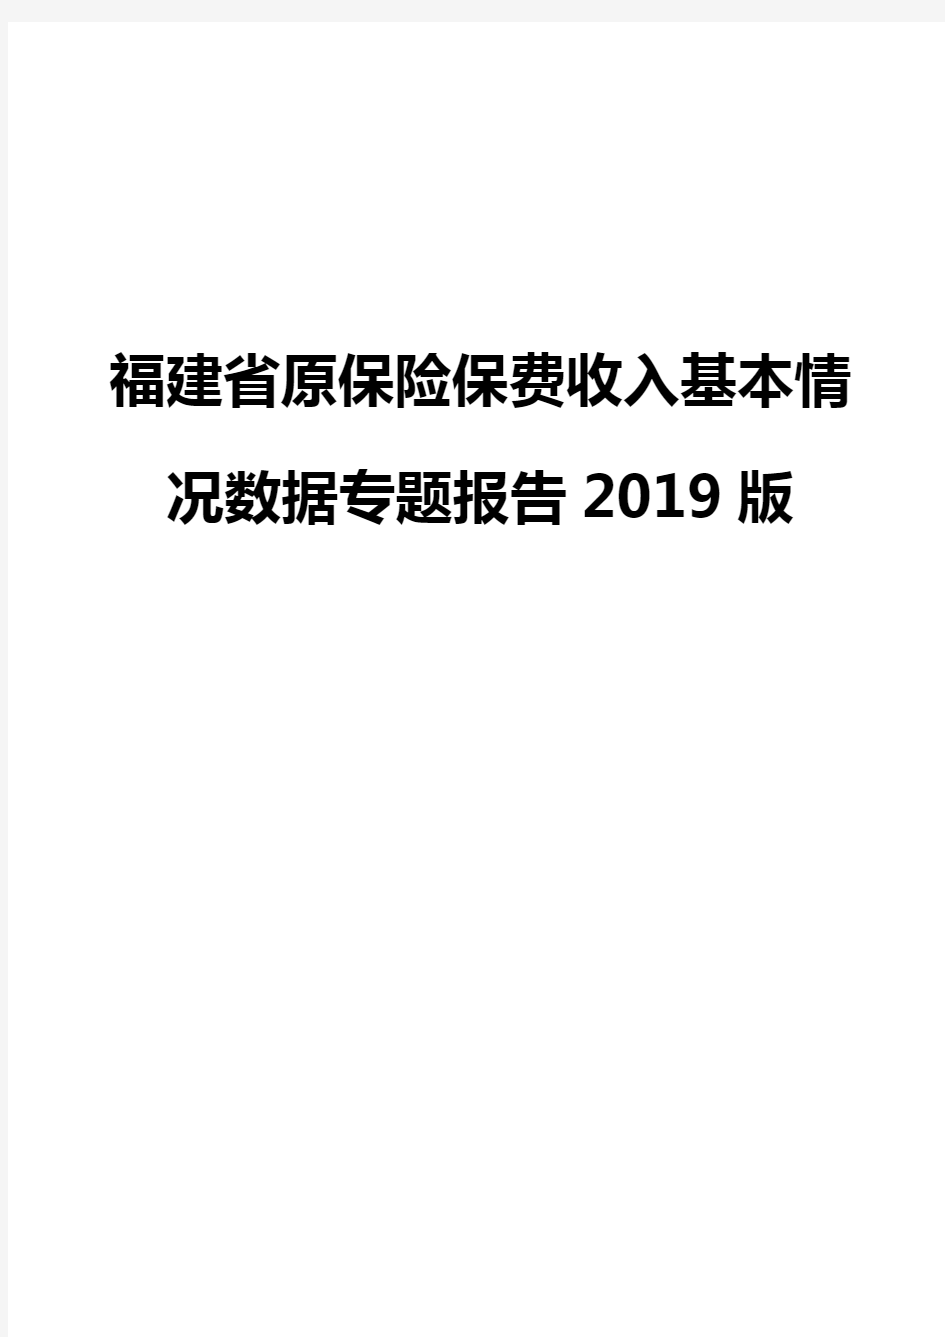 福建省原保险保费收入基本情况数据专题报告2019版